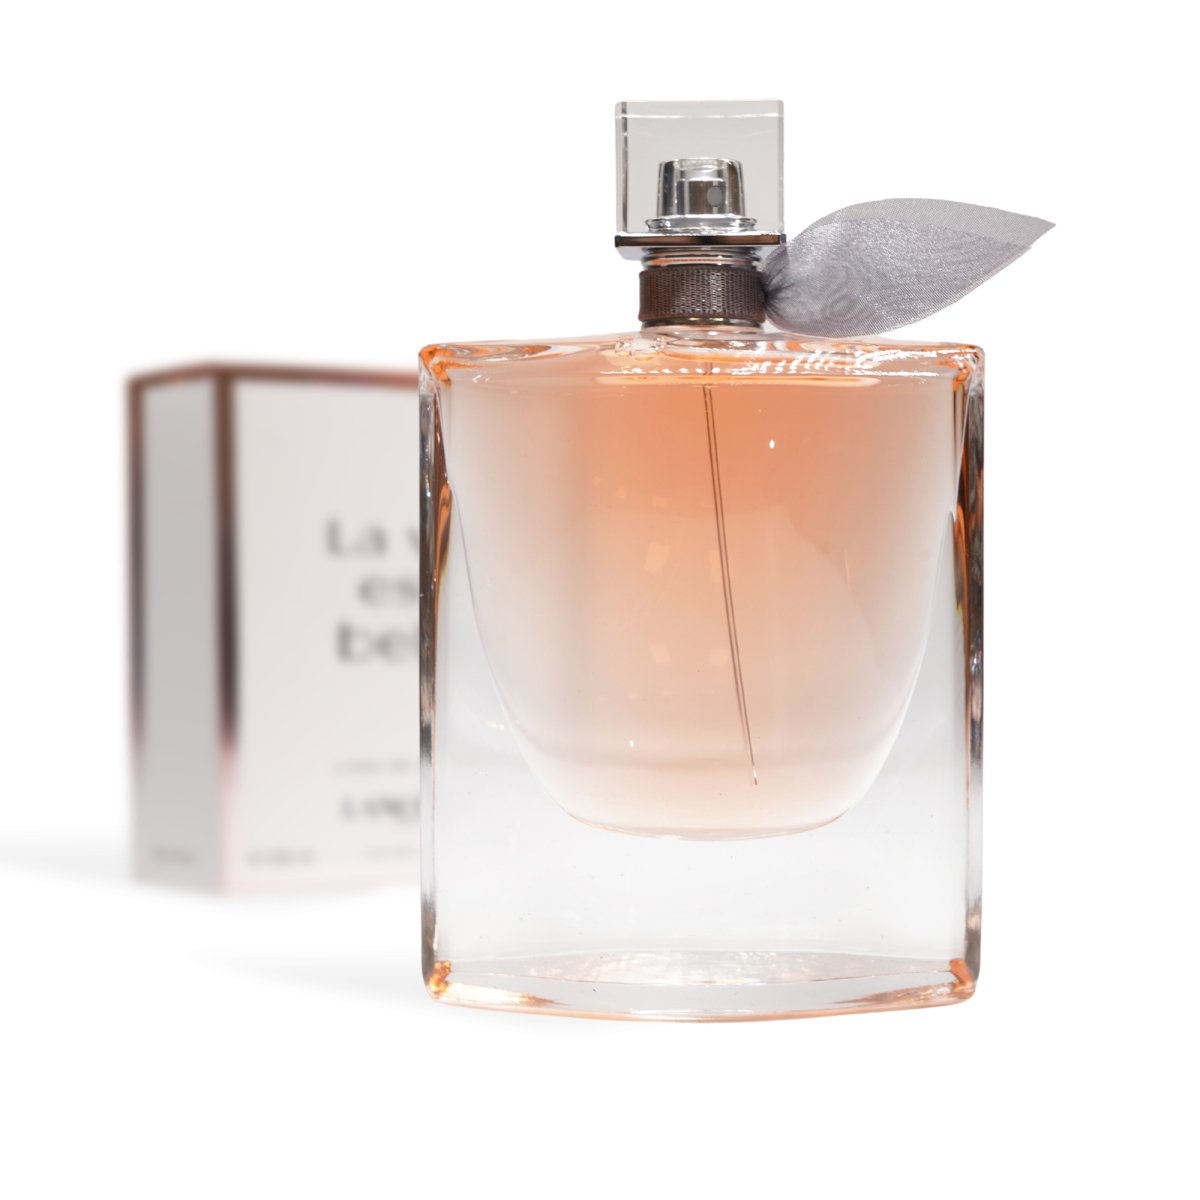 Lancôme La Vie Est Belle Eau de Parfum 3.4 oz - Lancome - Fragrance